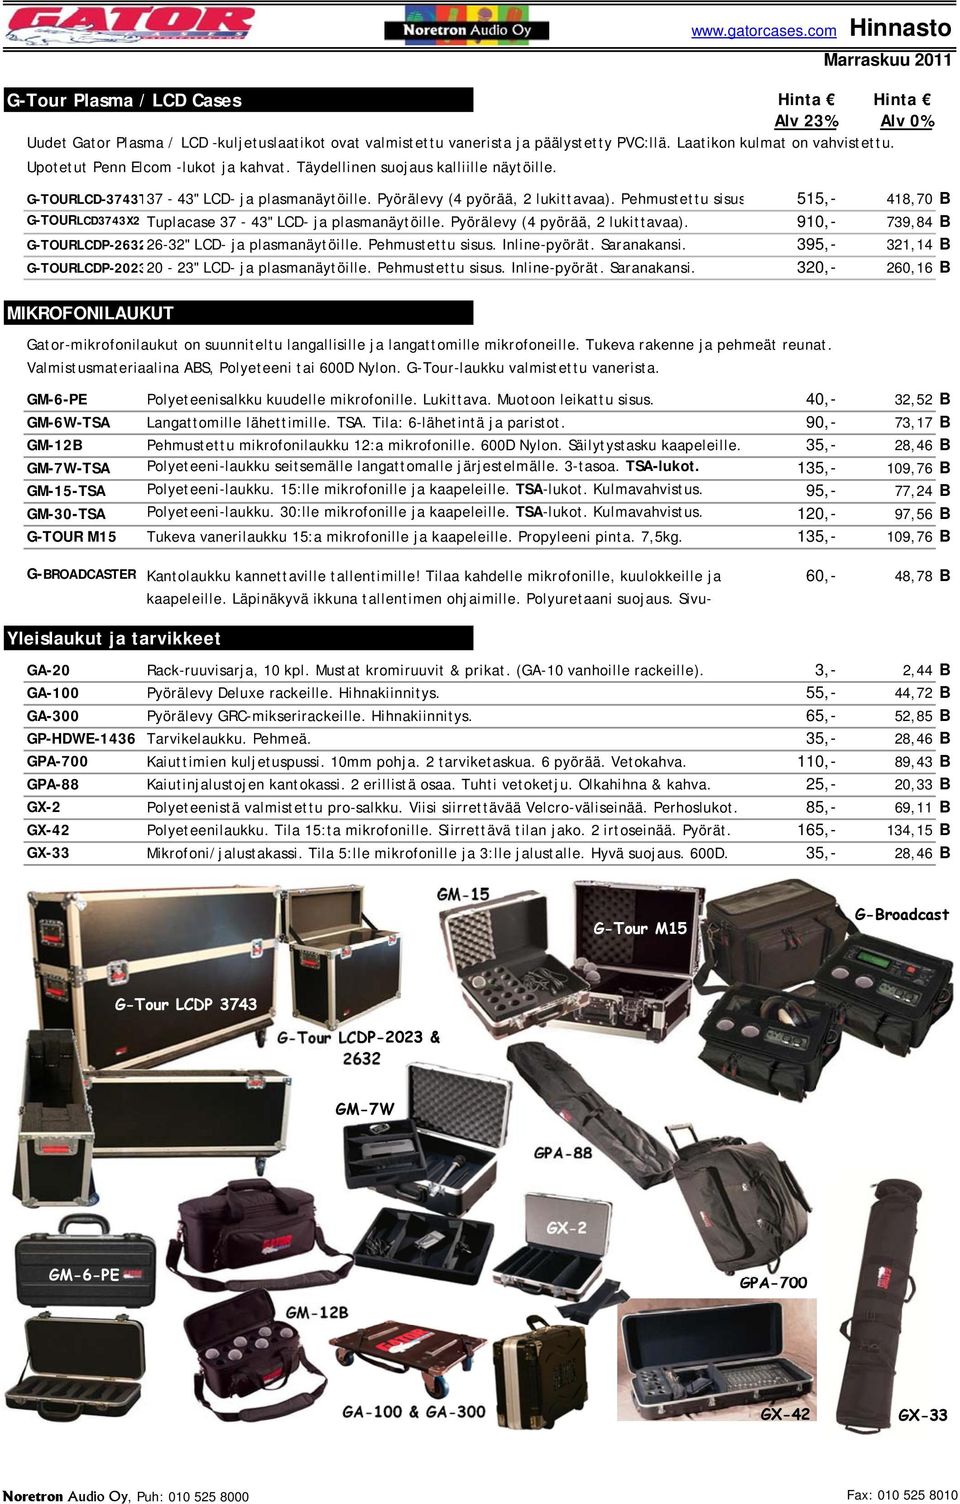 Pehmustettu sisus 515,- 418,70 B G-TOURLCD3743X2 Tuplacase 37-43" LCD- ja plasmanäytöille. Pyörälevy (4 pyörää, 2 lukittavaa). 910,- 739,84 B G-TOURLCDP-263226-32" LCD- ja plasmanäytöille.